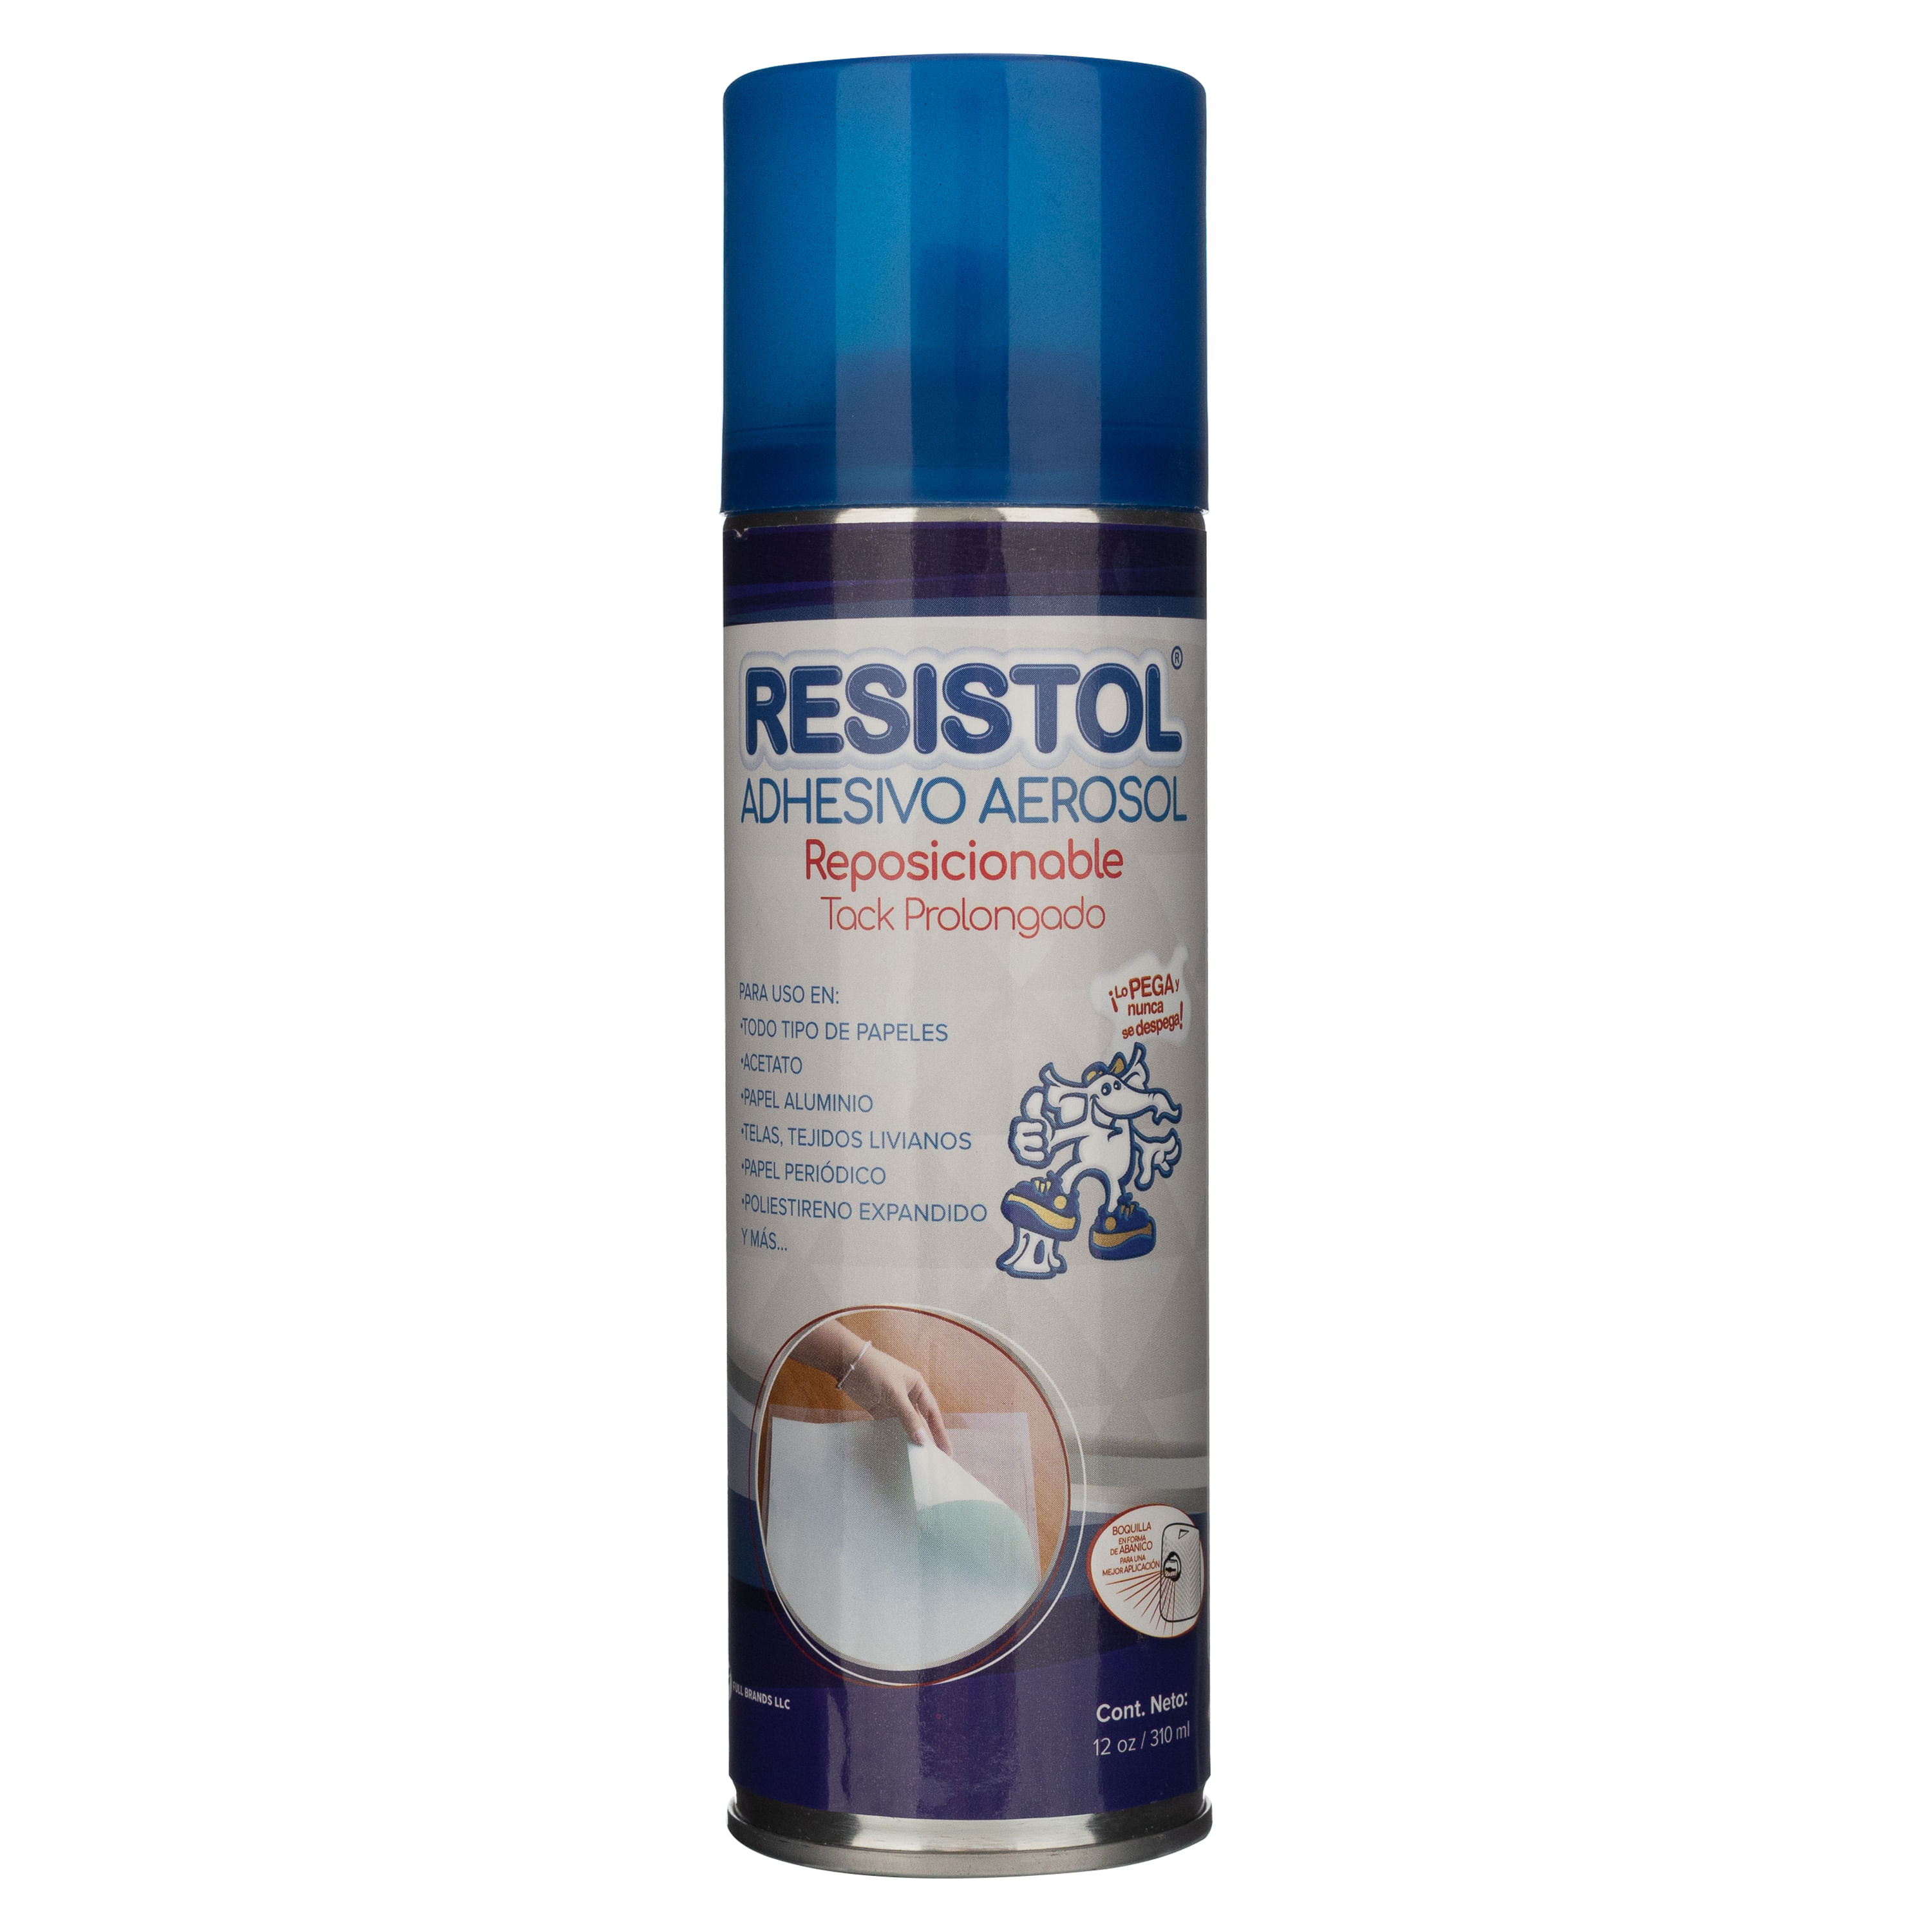 Comprar Adhesivo Resistol Aerosol Reposicionable 12 oz